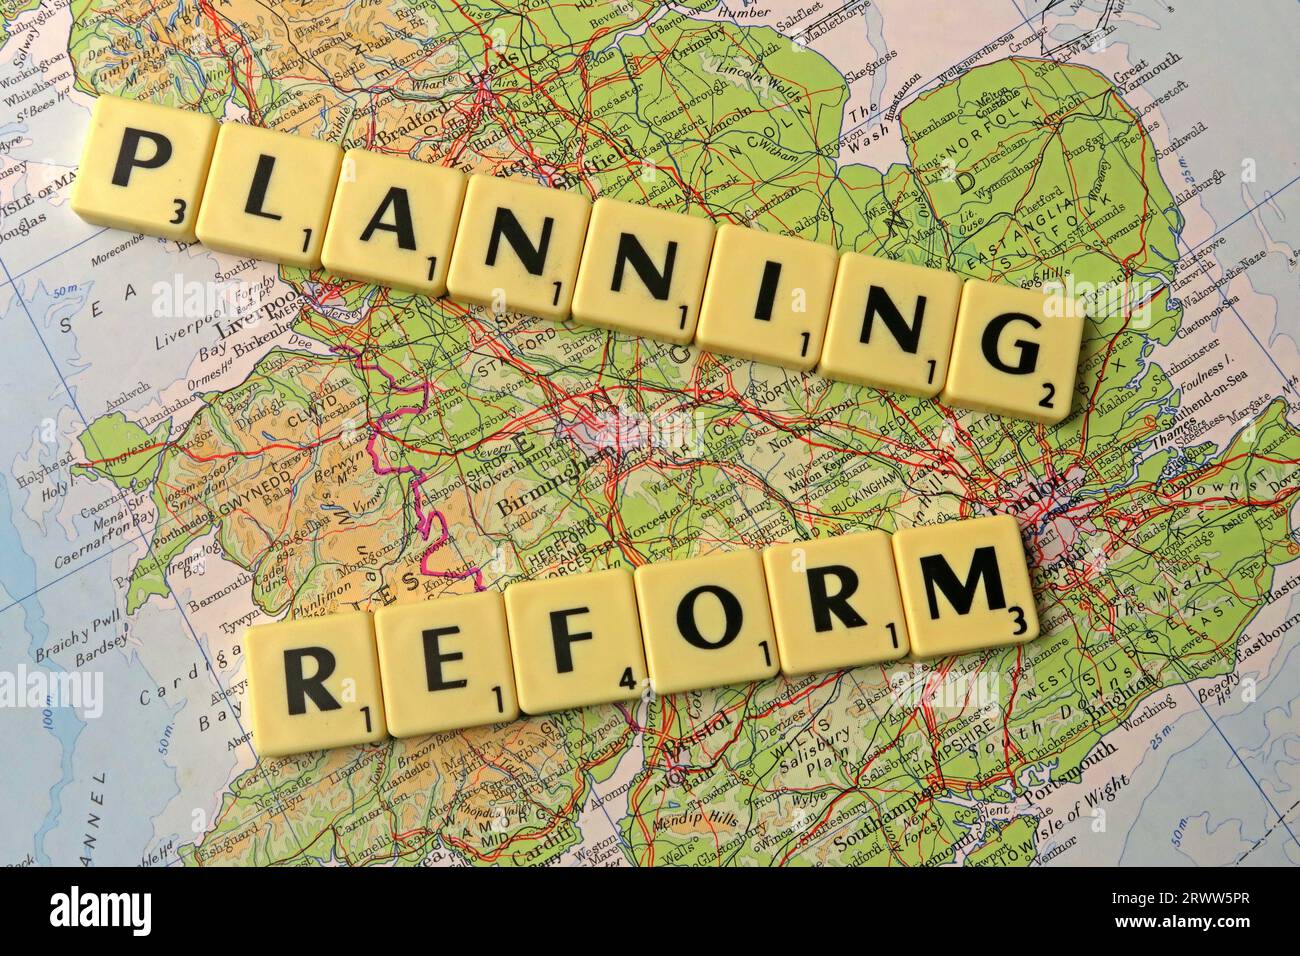 La réforme de la planification expliquée en lettres et mots scrabble sur une carte de l'Angleterre - développement local et contrôle des bâtiments Banque D'Images